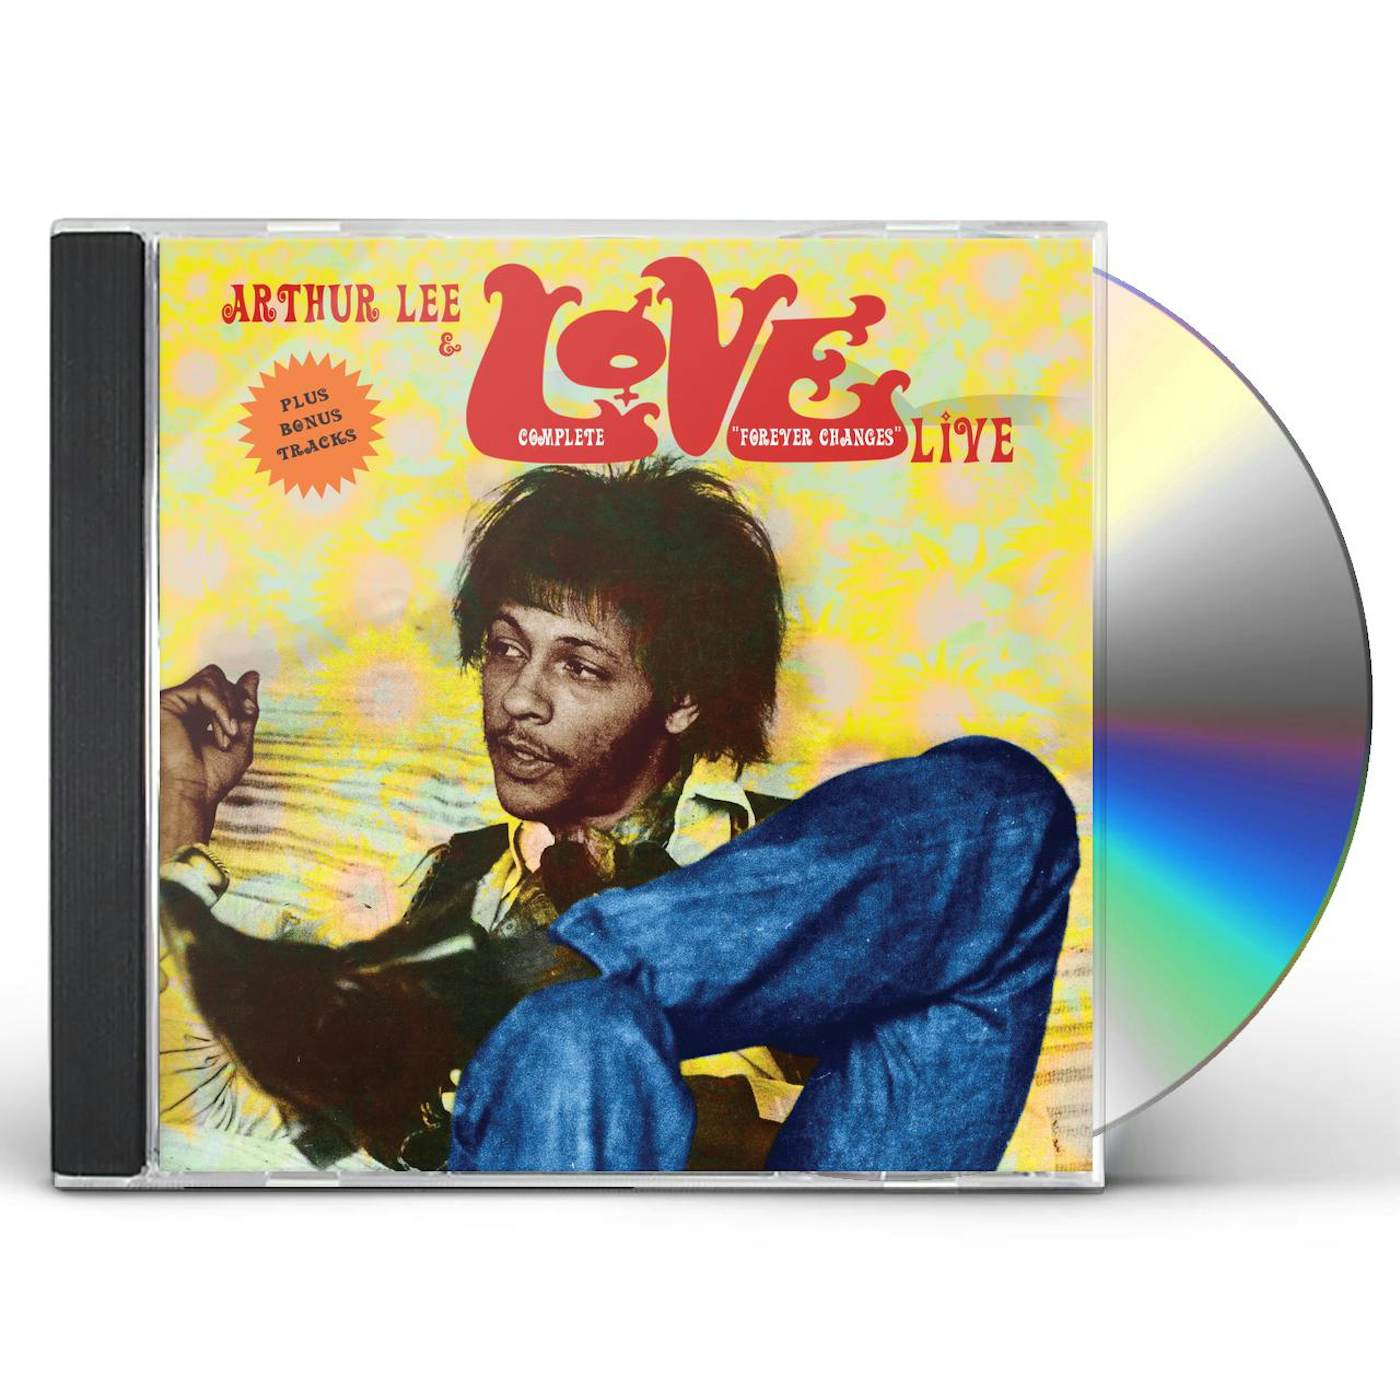 Arthur Lee Complete Forever Changes: Live CD